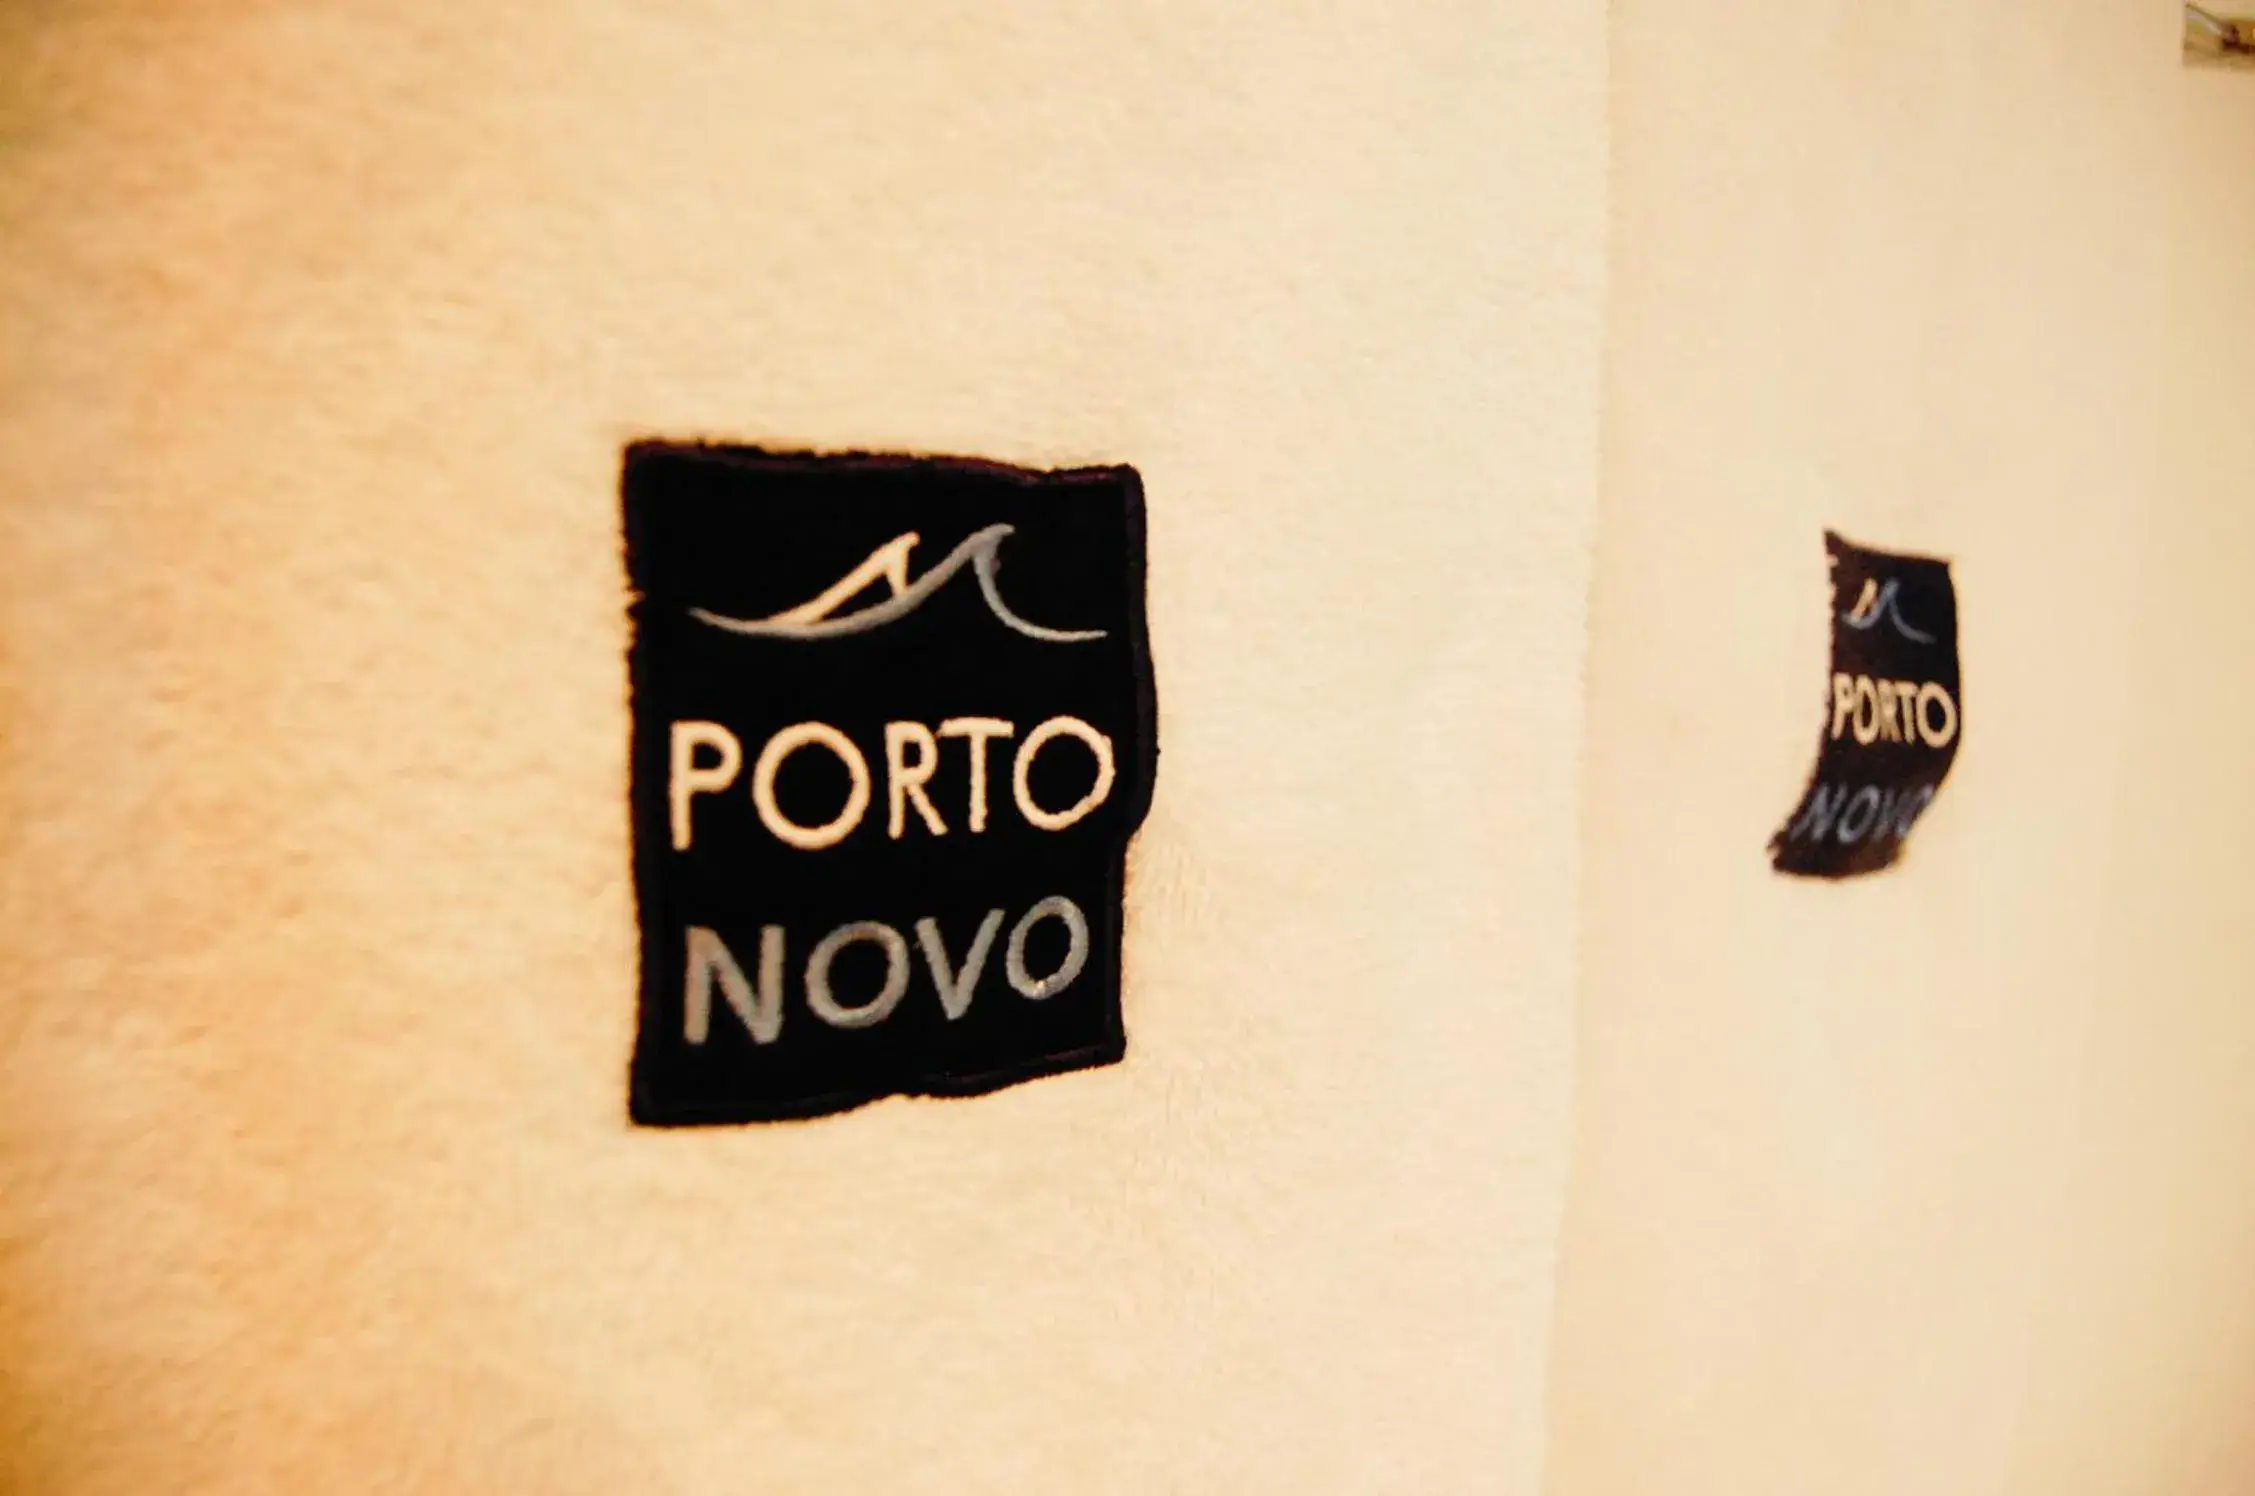 Property logo or sign, Logo/Certificate/Sign/Award in Hotel Porto Novo